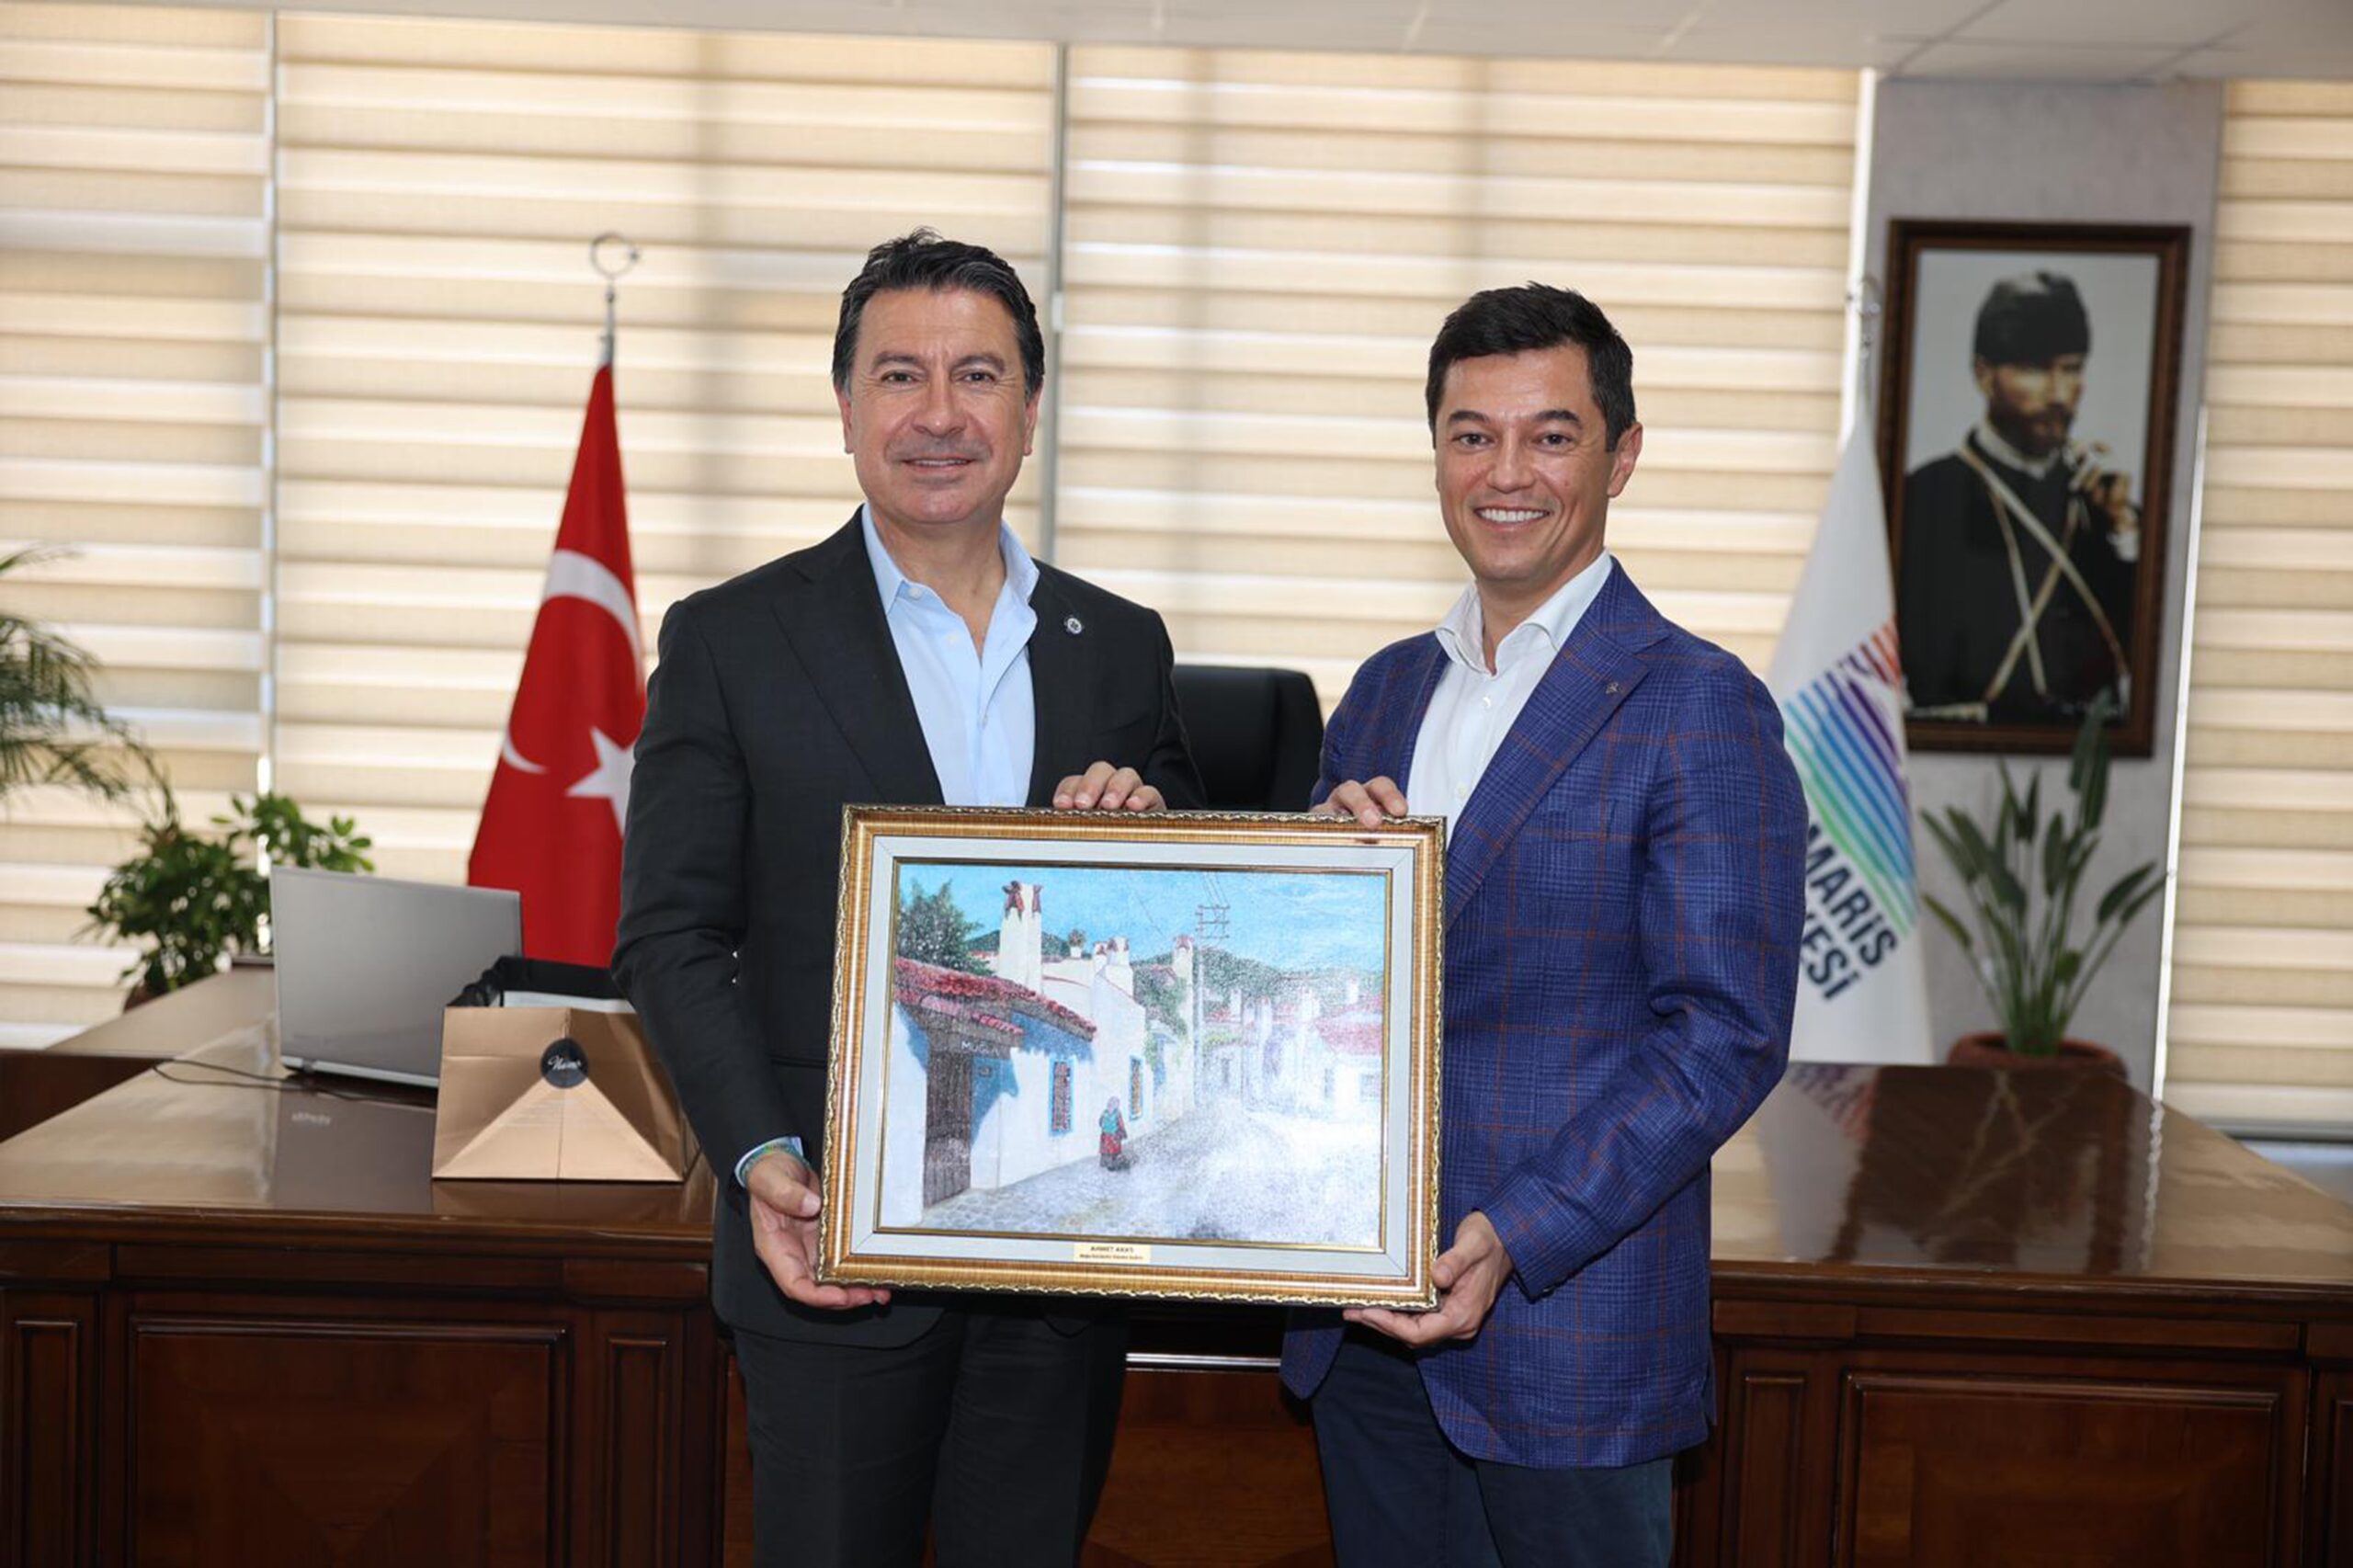 Marmaris Belediye Başkanı Acar Ünlü’yü Ziyaret Eden Muğla Büyükşehir Belediye Başkanı Ahmet Aras, Gazetecilere Açıklamalarda Bulundu